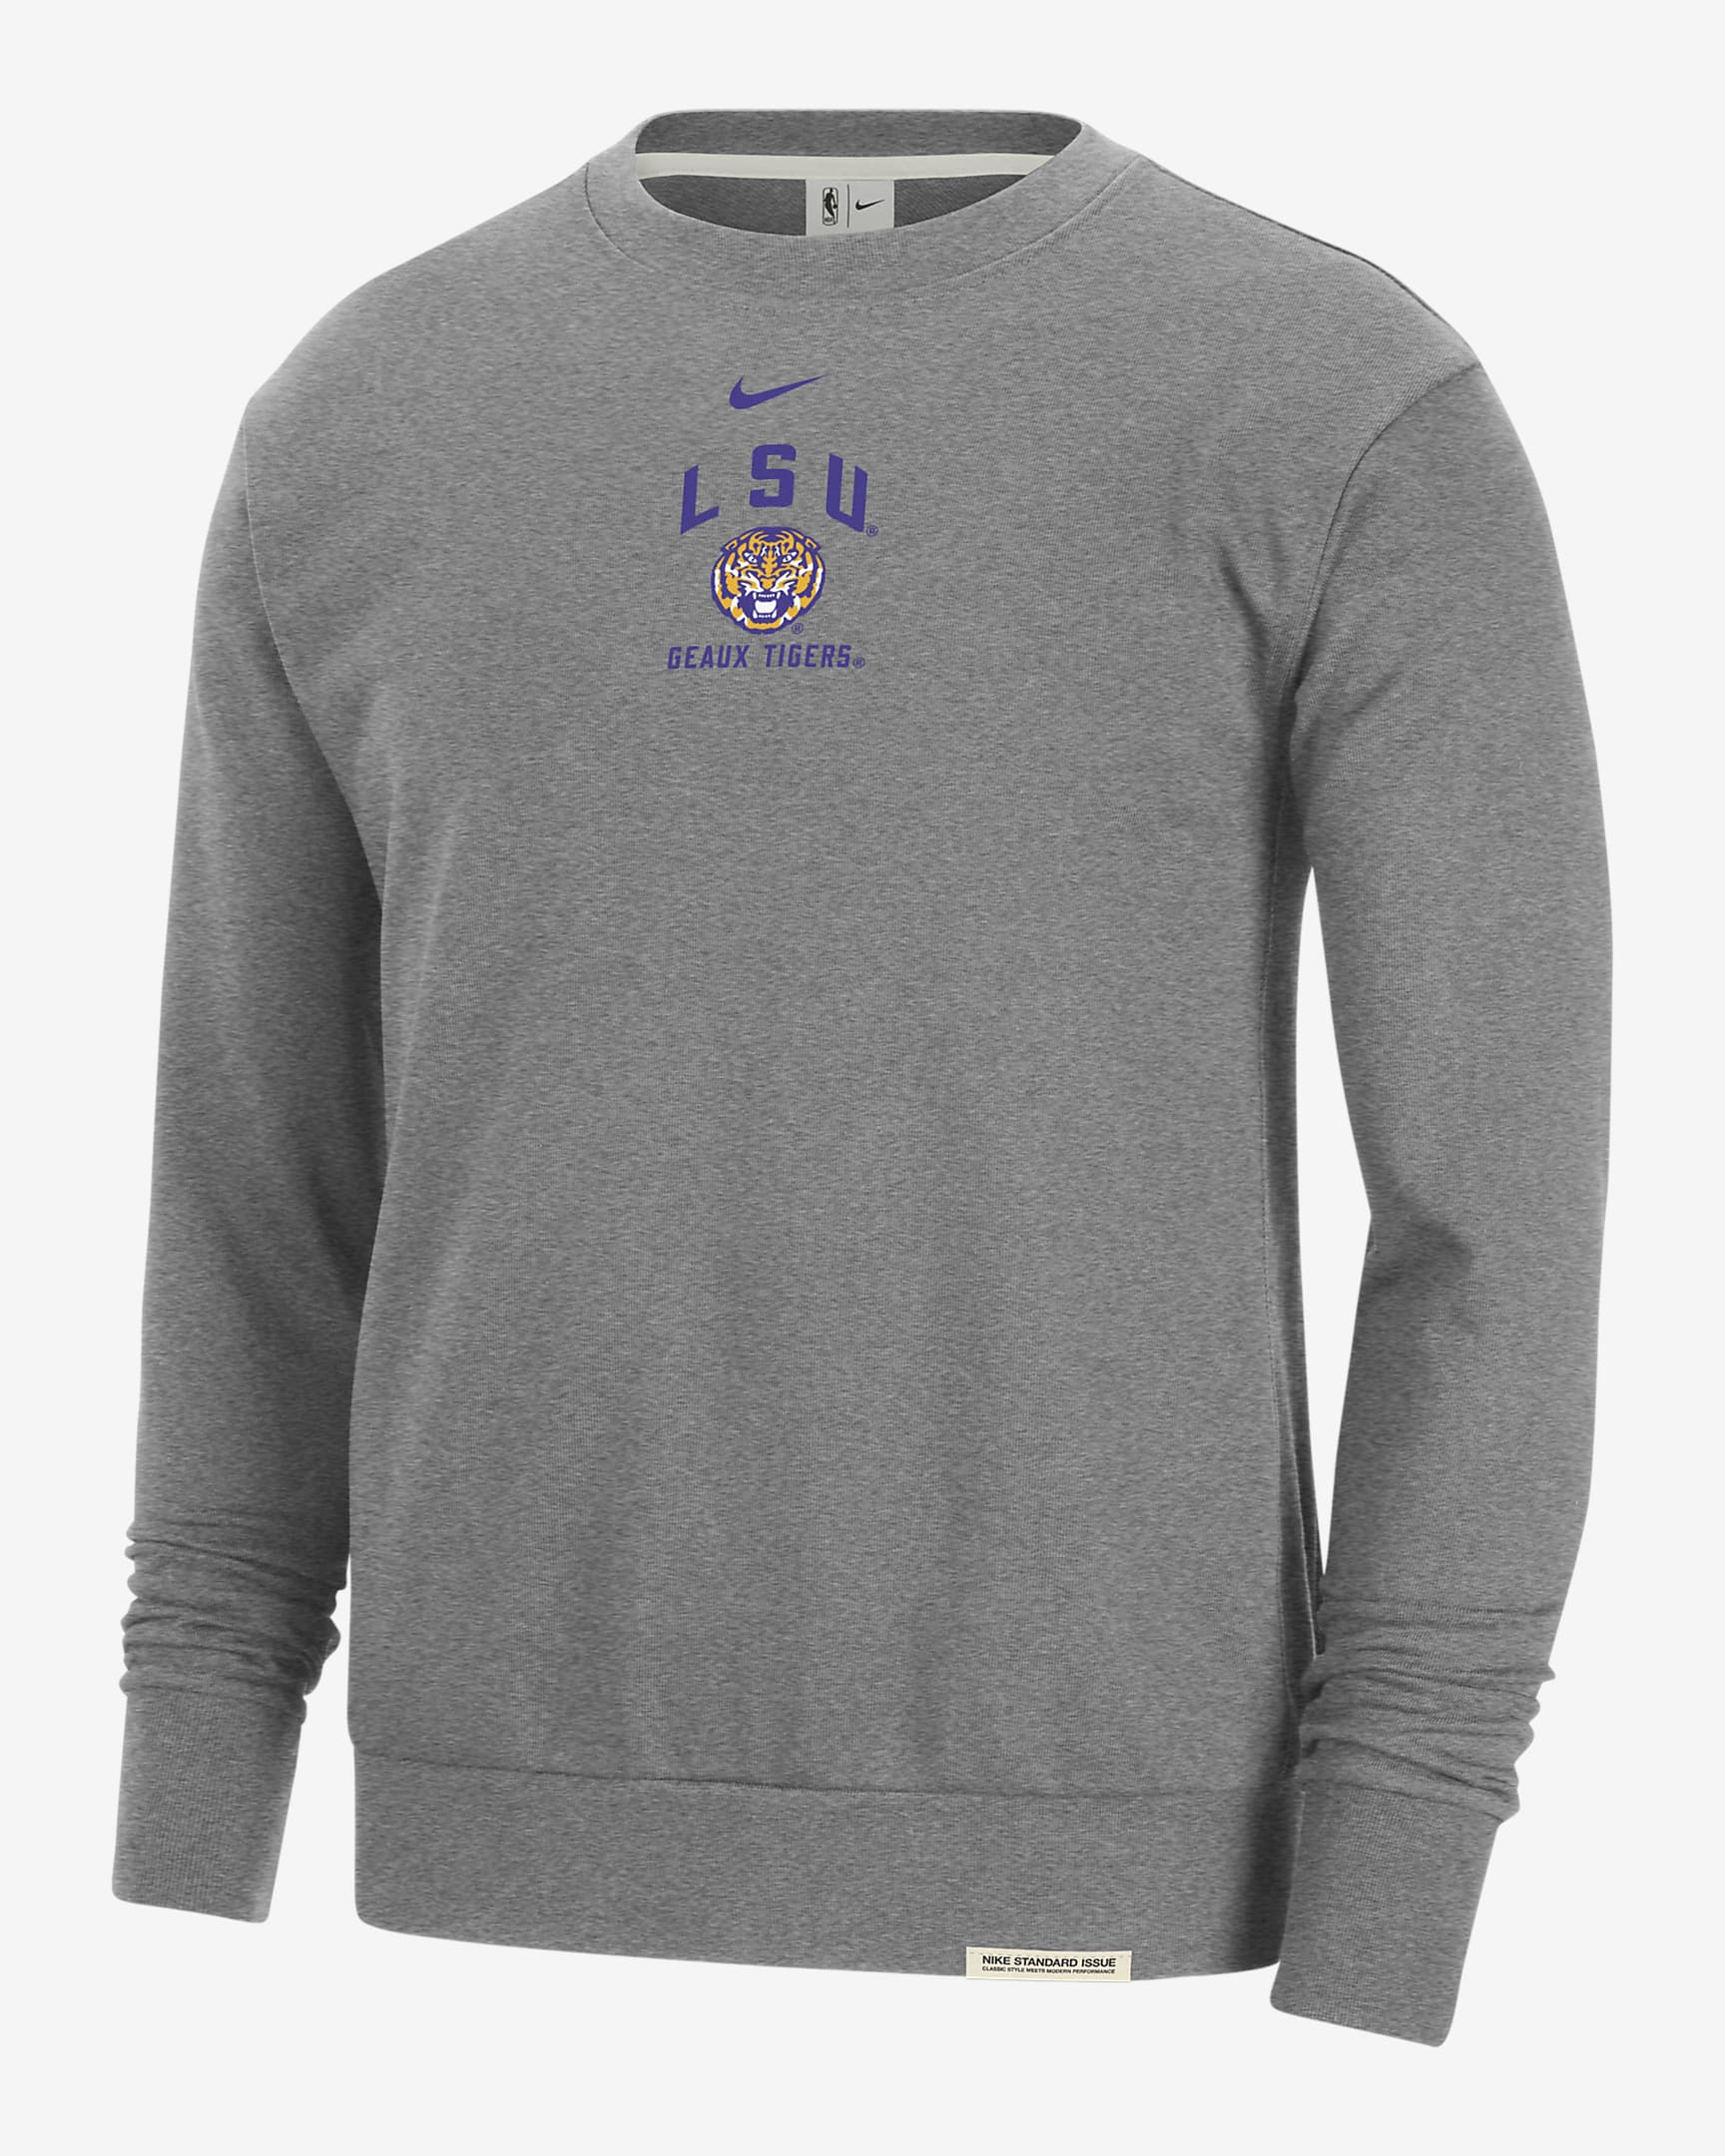 LSU Standard Issue Men's Nike College Fleece Crew-Neck Sweatshirt. Nike.com